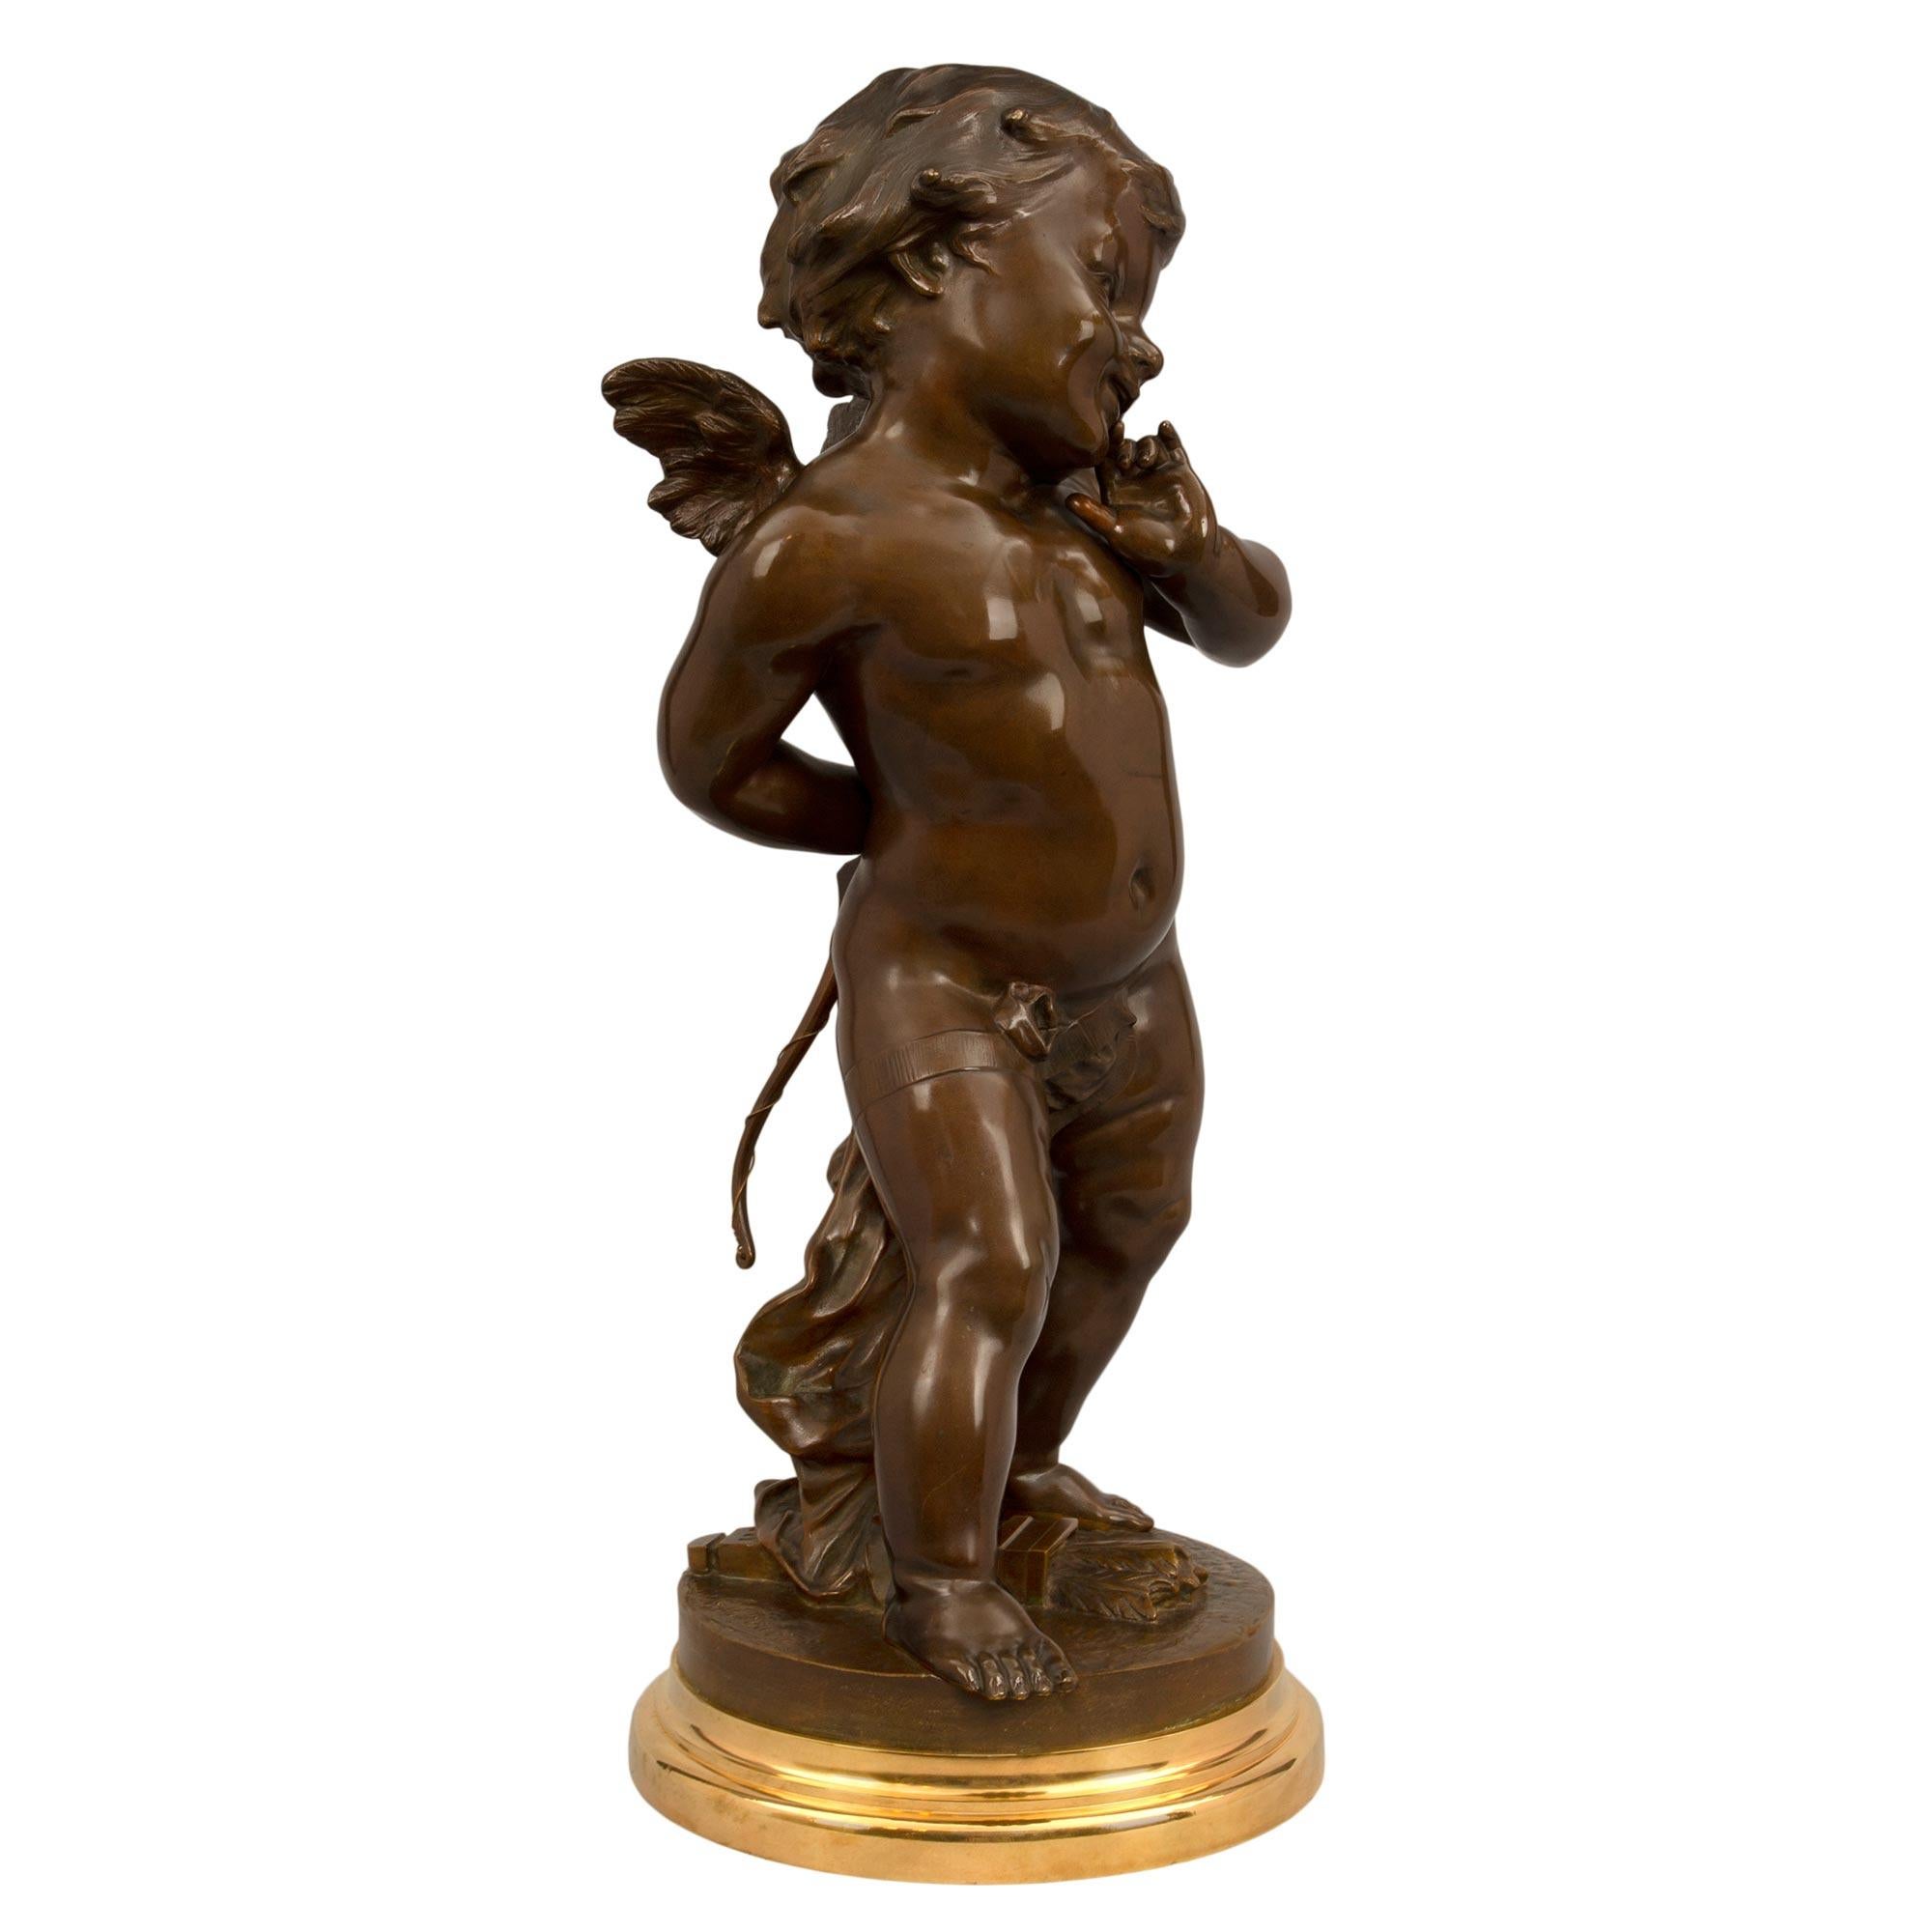 Charmante statue en bronze patiné et bronze doré de style Louis XVI du XIXe siècle, signée E. Drouot. La statue est surmontée d'une base circulaire en bronze doré avec une bordure tachetée. Le chérubin ailé finement détaillé, peut-être Cupidon, se